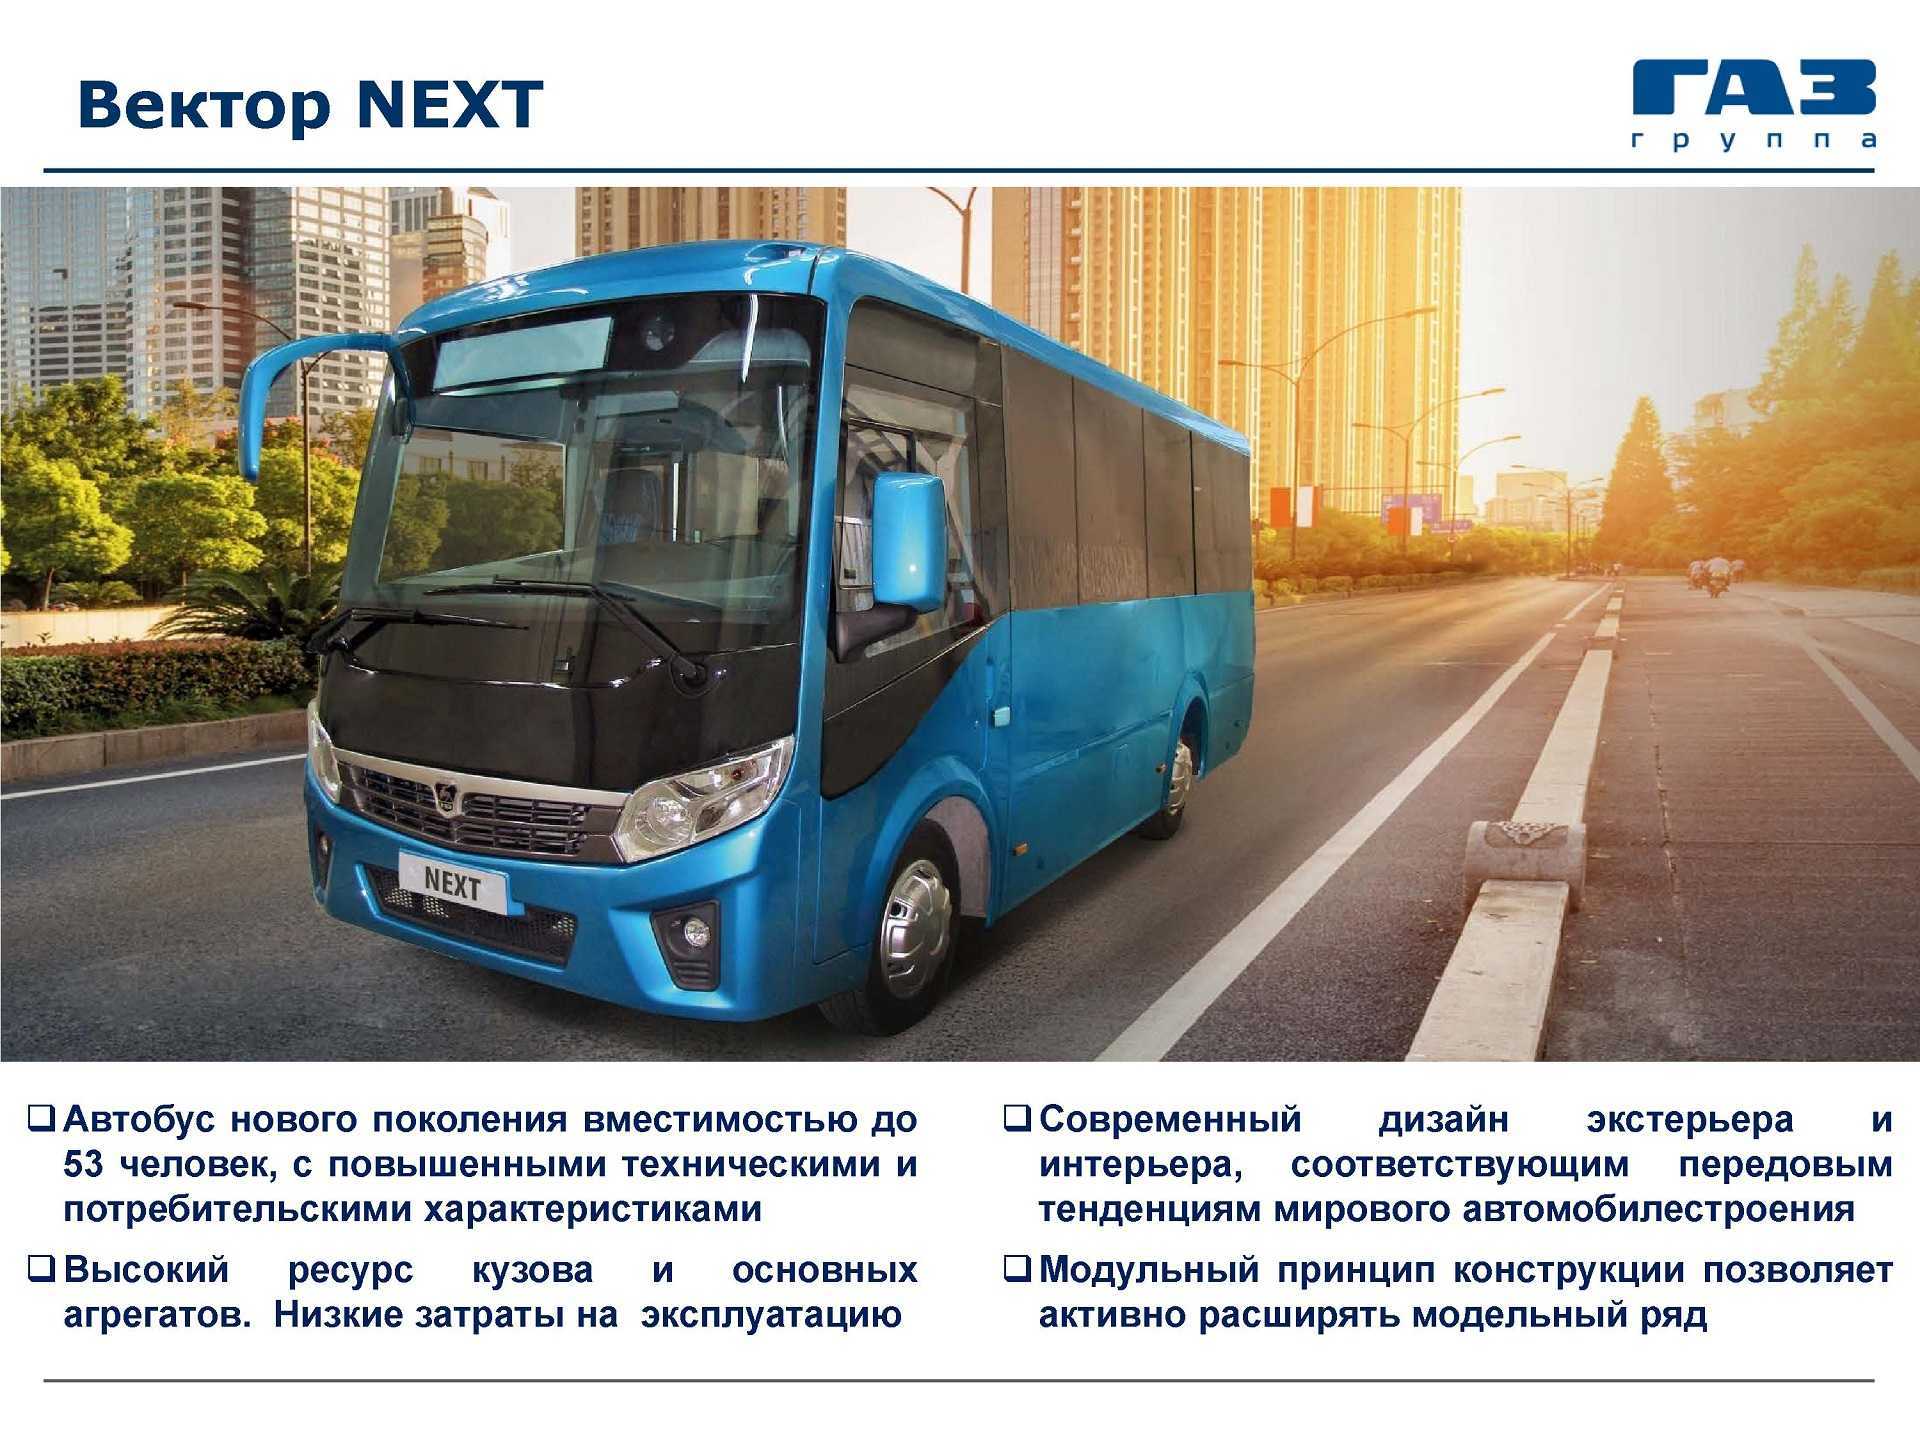 Автобус газ vector next паз-320405